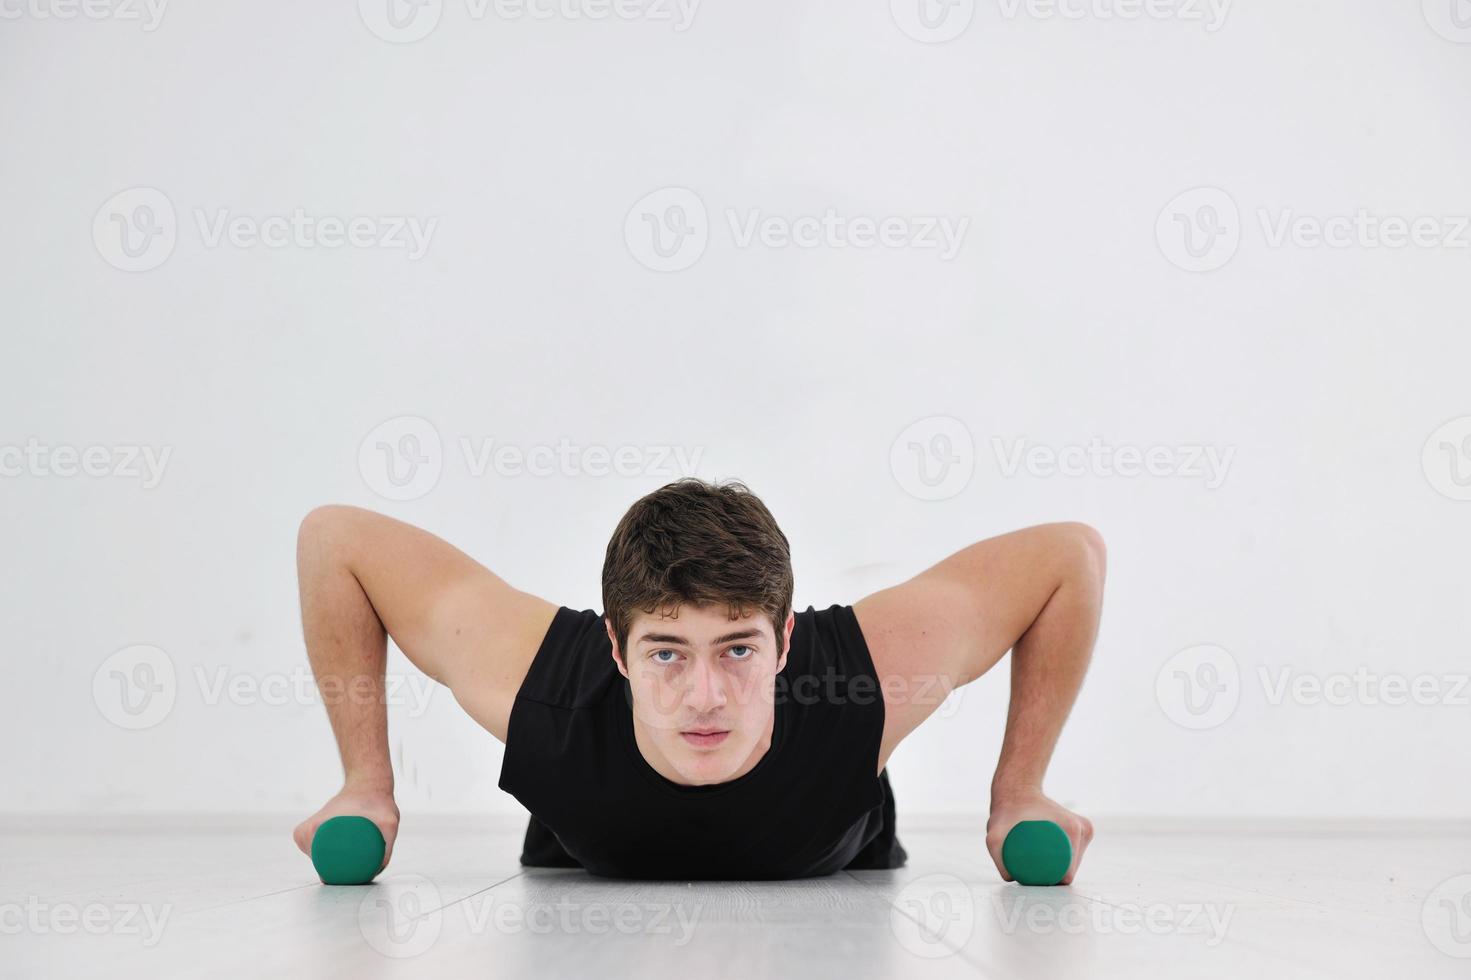 man fitness workout photo